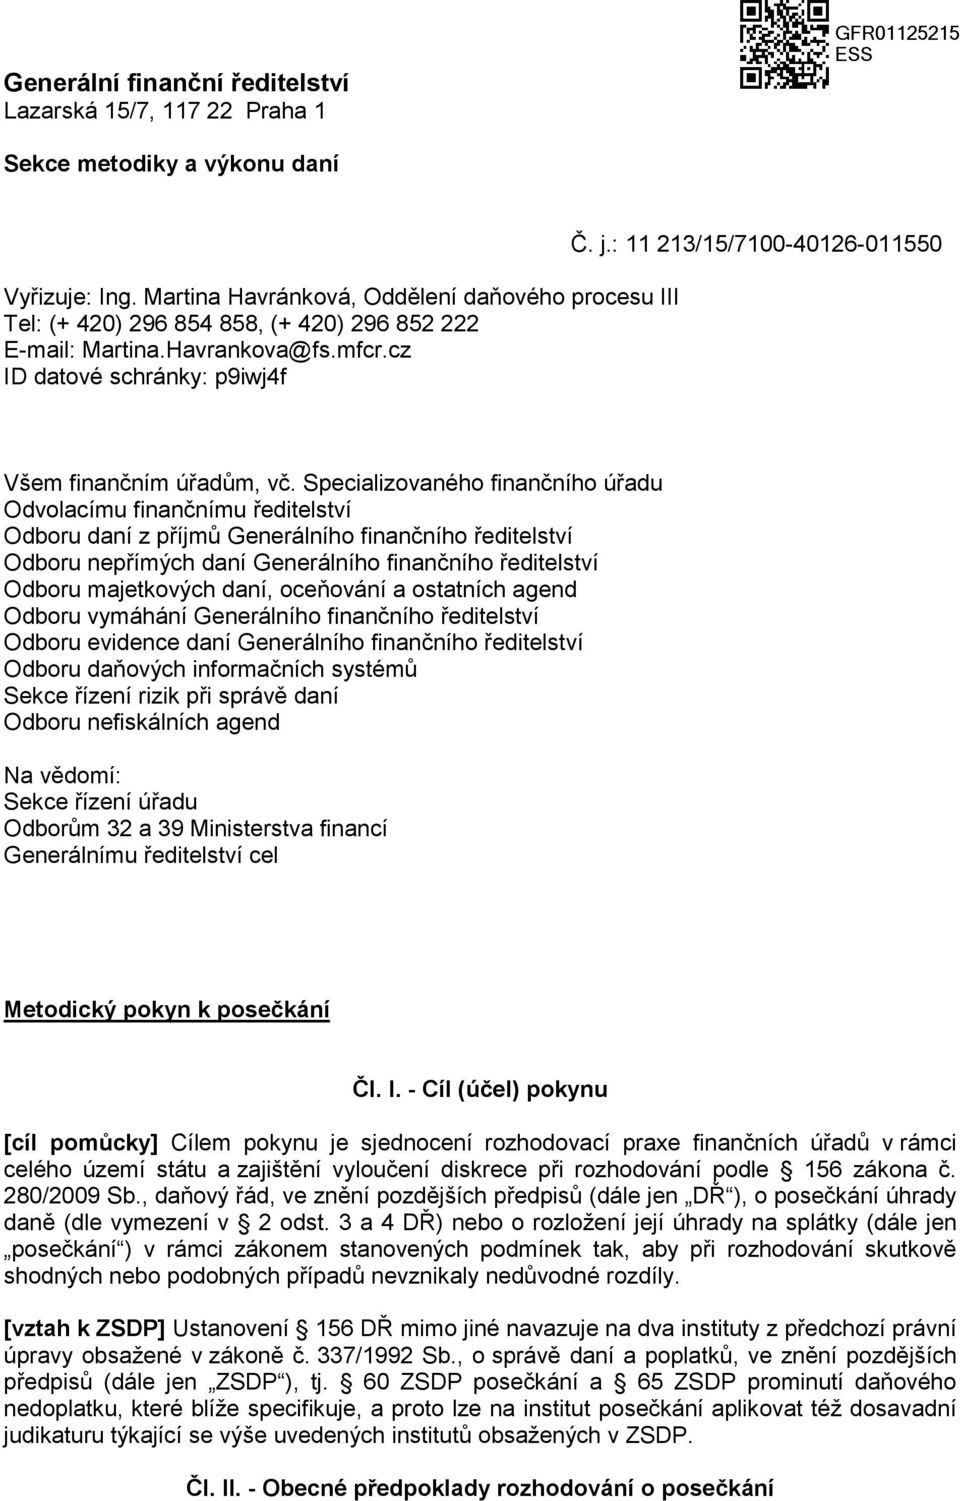 Generální finanční ředitelství Lazarská 15/7, Praha 1 - PDF Free Download